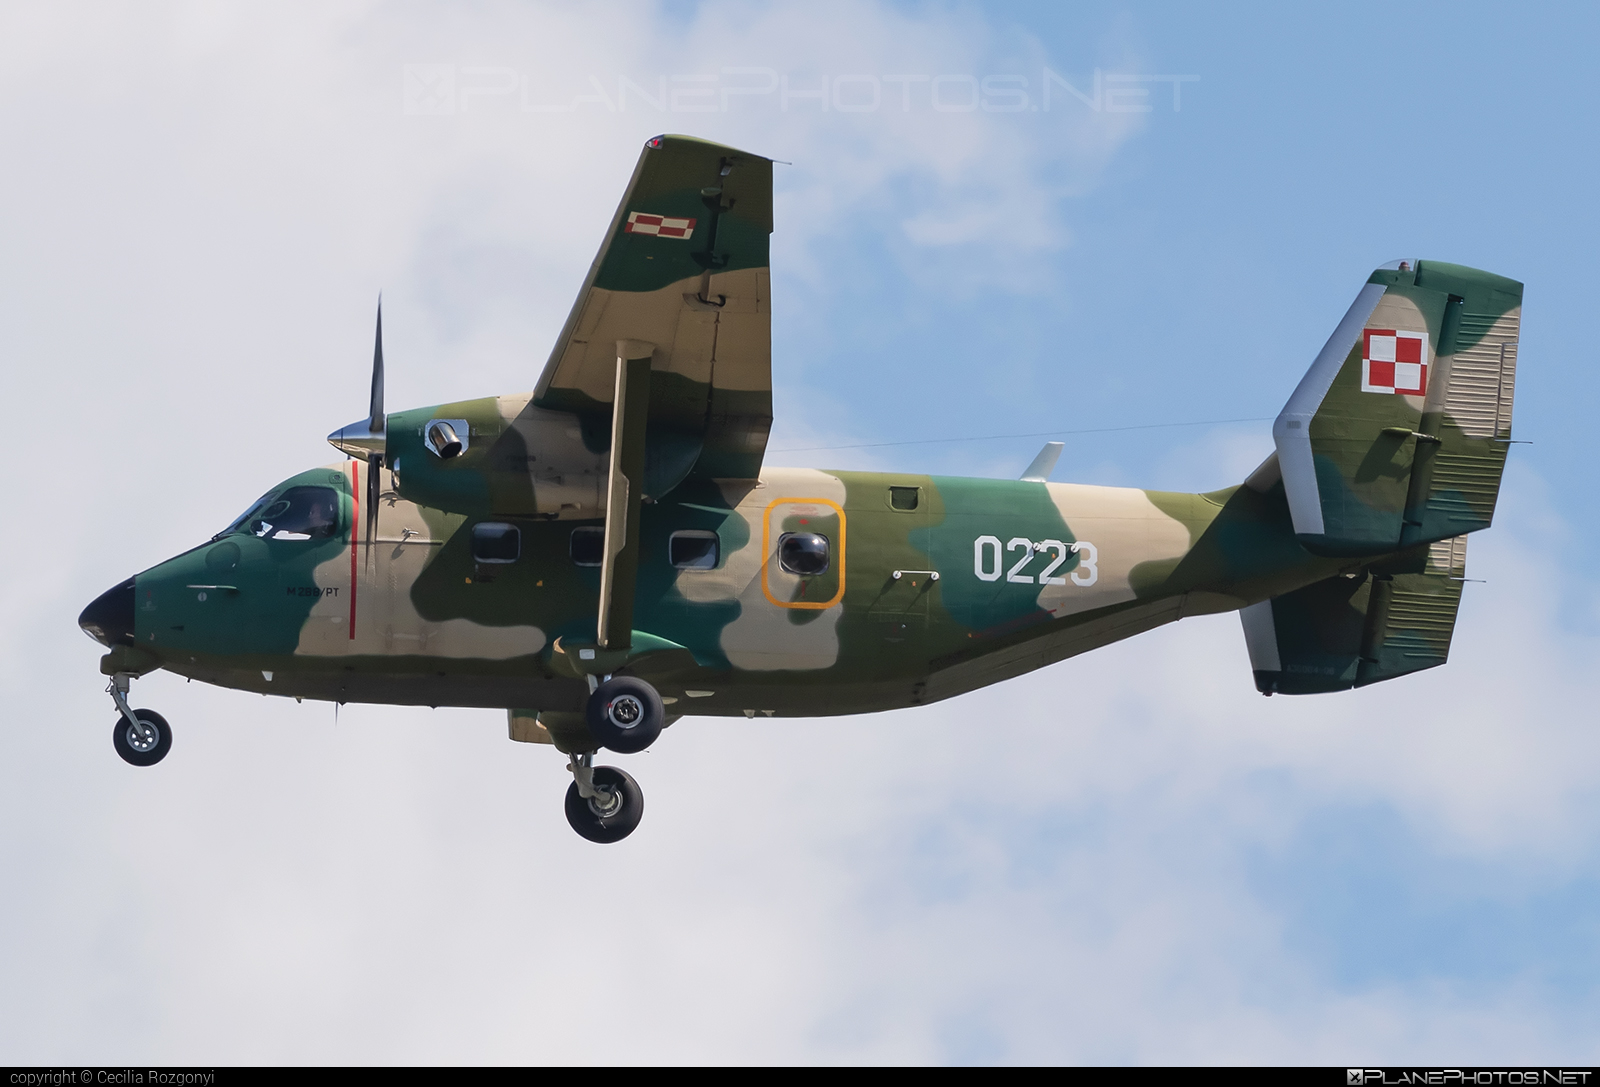 PZL-Mielec M28B/PT Bryza 1TD - 0223 operated by Siły Powietrzne Rzeczypospolitej Polskiej (Polish Air Force) #polishairforce #pzl #pzlmielec #silypowietrzne